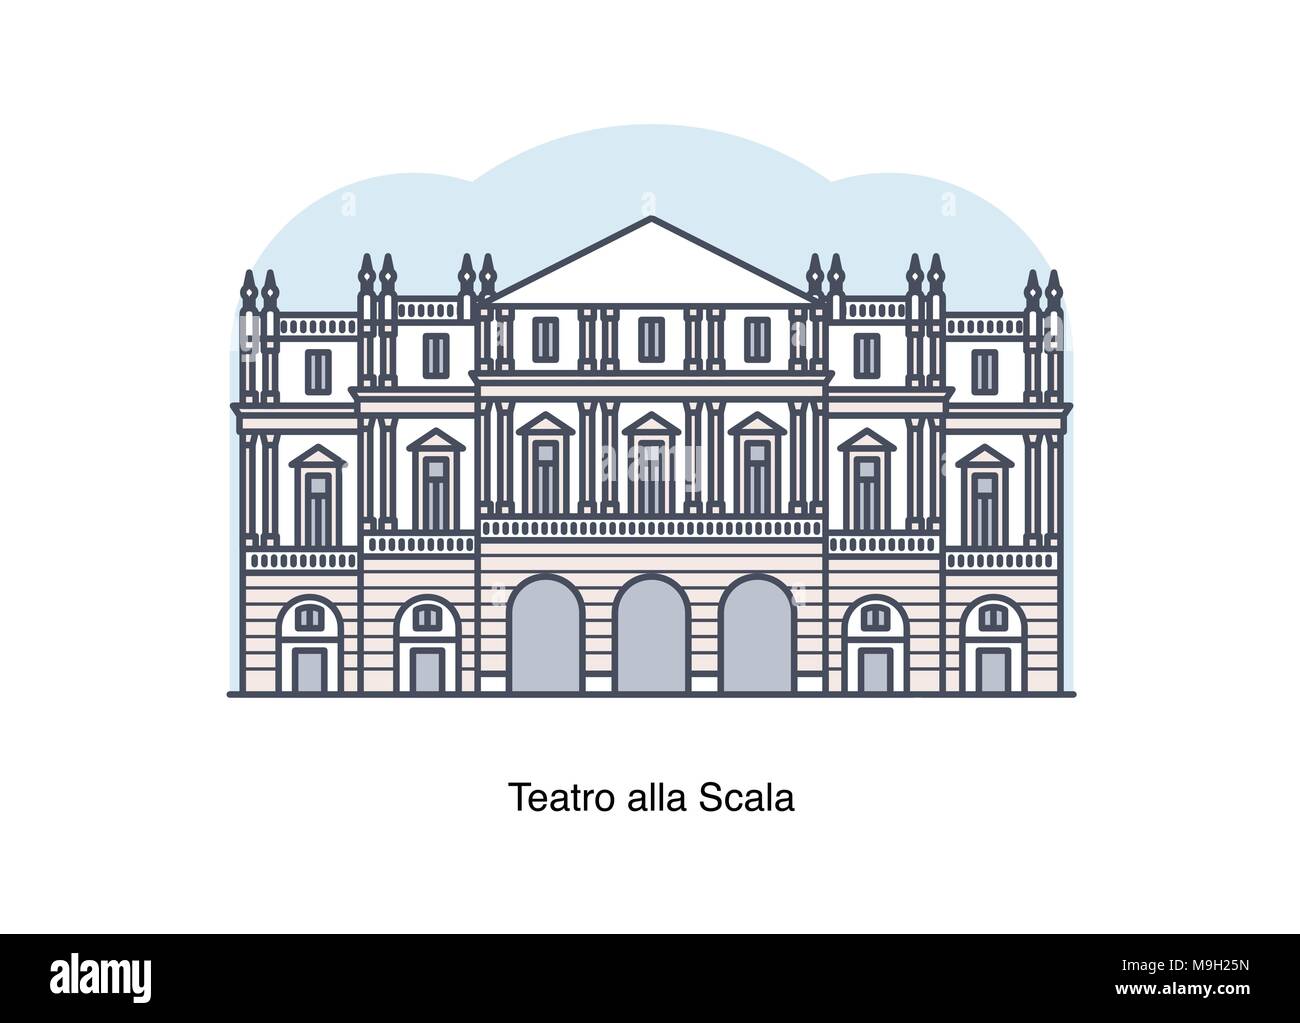 Vektor linie Abbildung des Teatro alla Scala (Mailänder Scala), Mailand, Italien. Stock Vektor